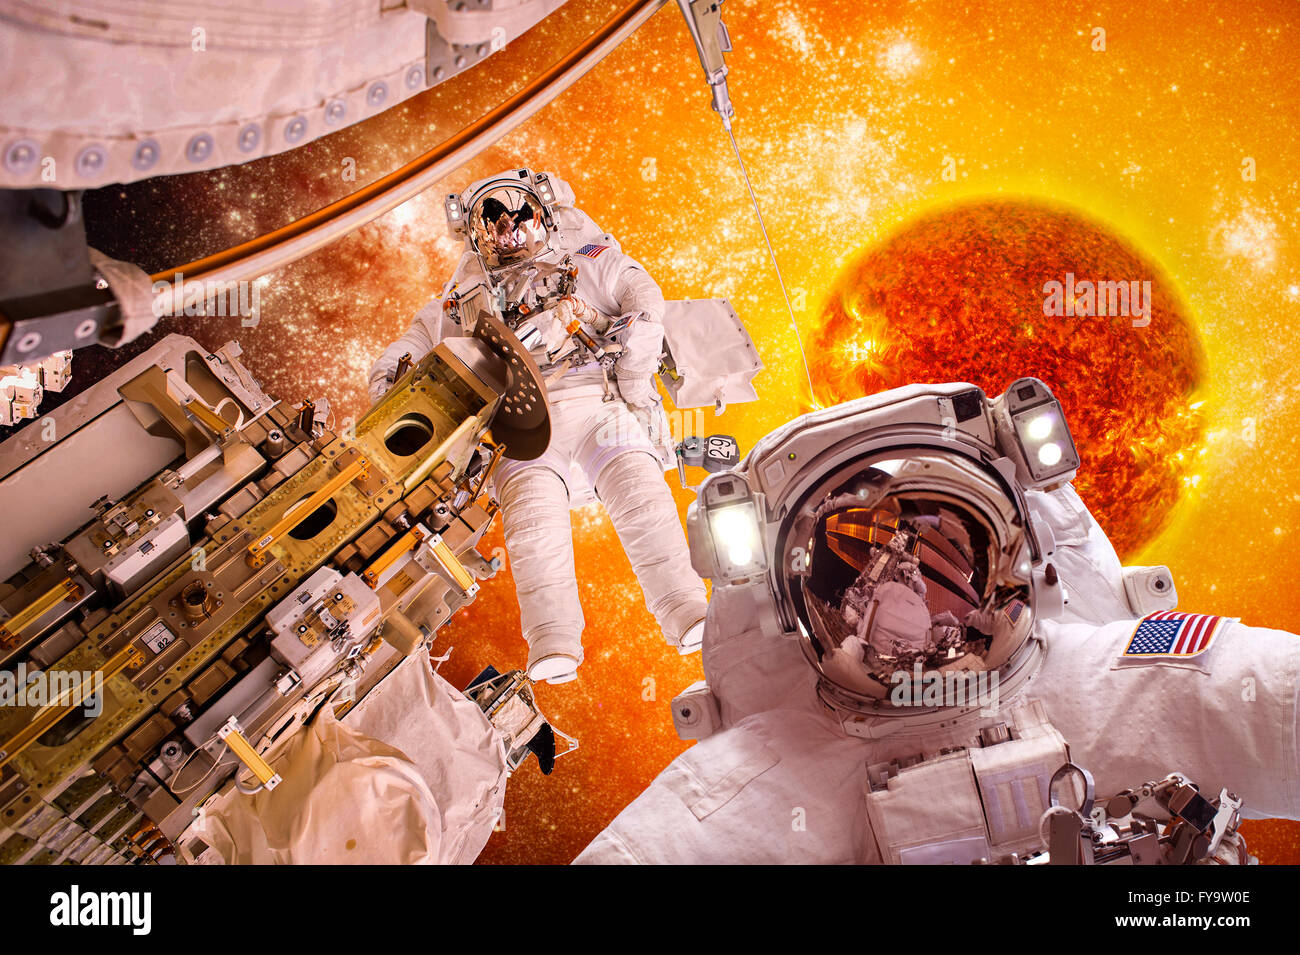 Raumfahrzeuge und Astronauten im Weltraum auf Hintergrund Sonne Stern. Elemente des Bildes von der NASA eingerichtet. Stockfoto